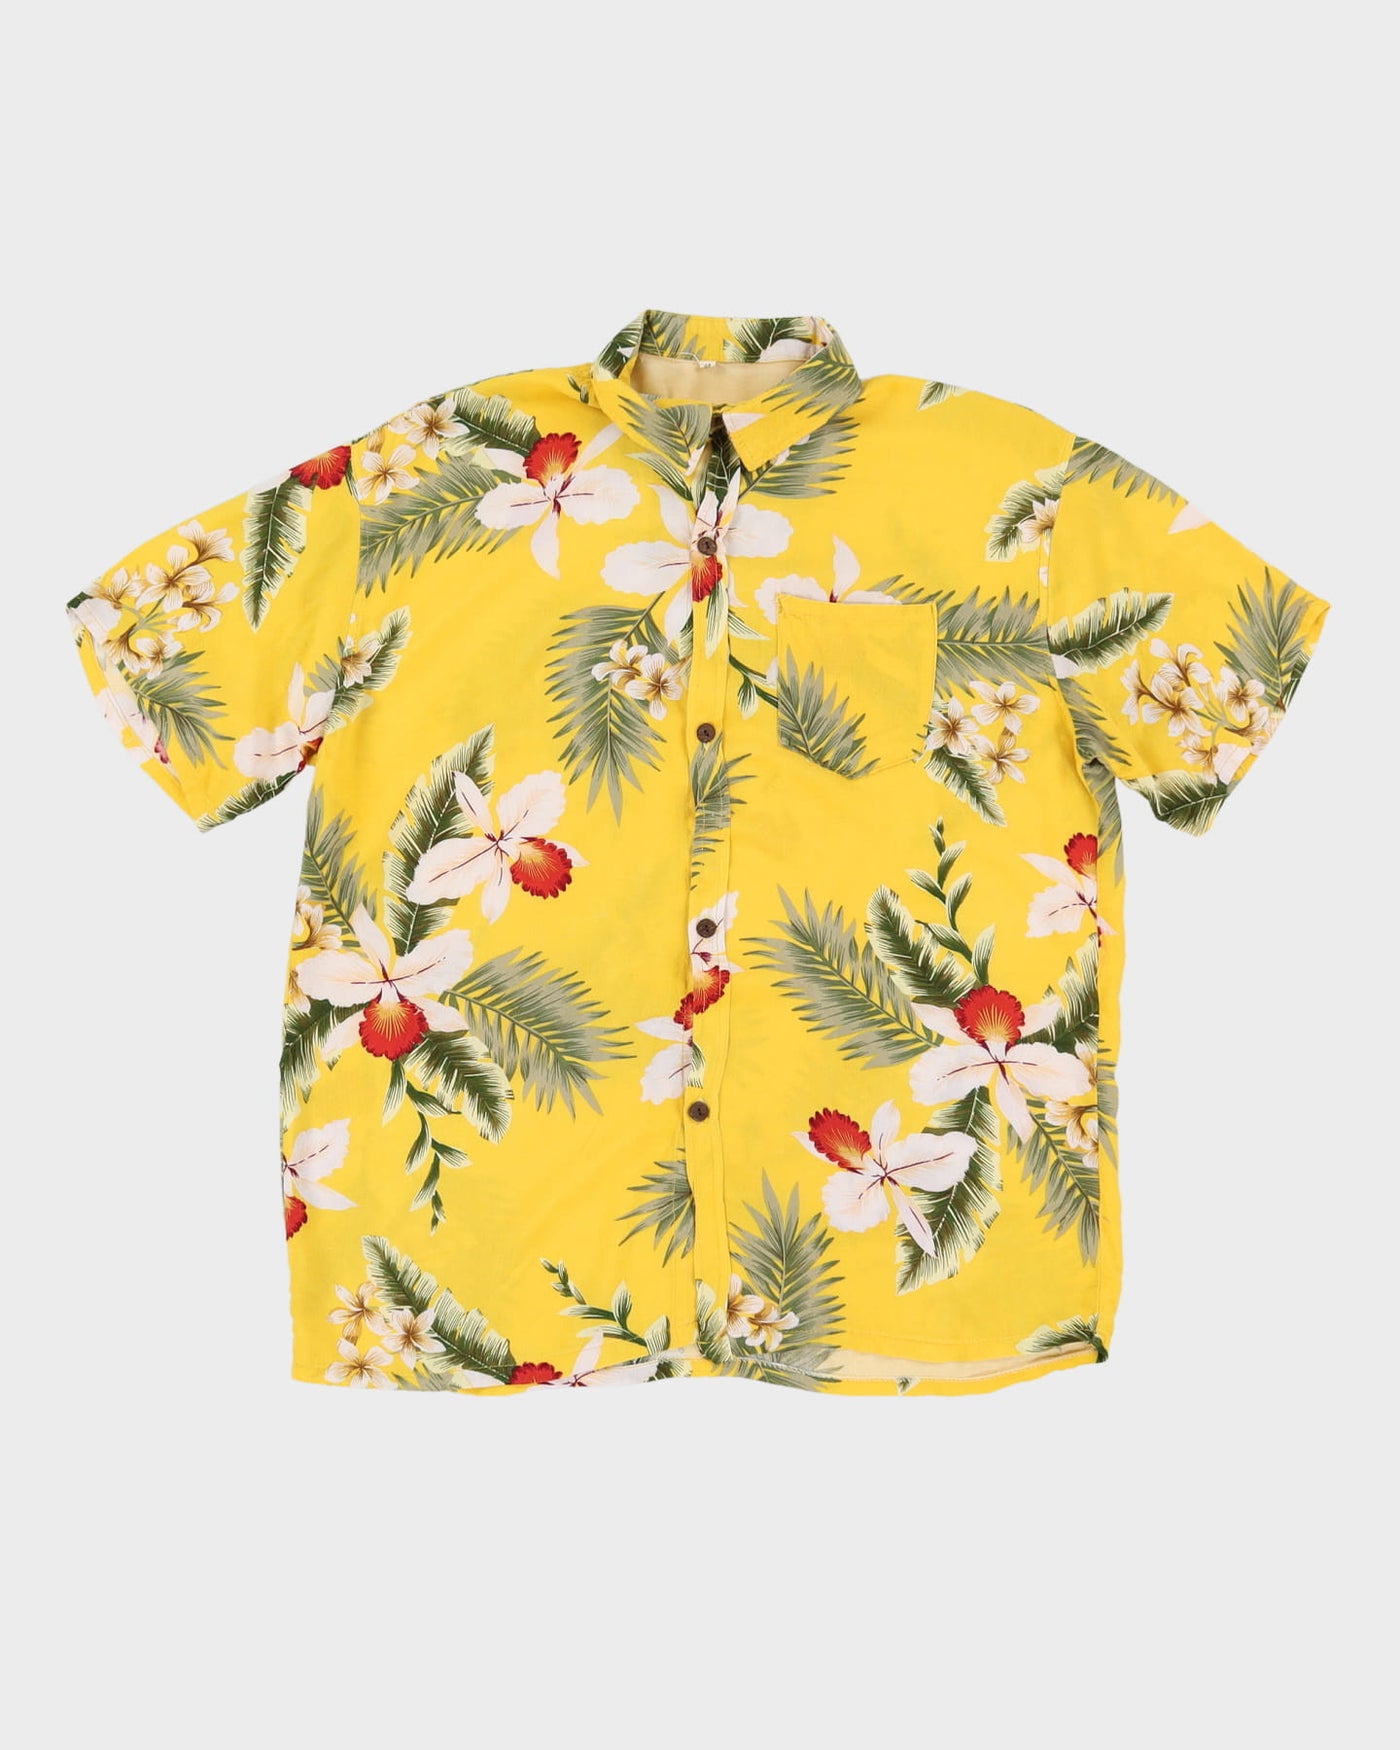 00s Yellow Floral Hawaiian Shirt - M